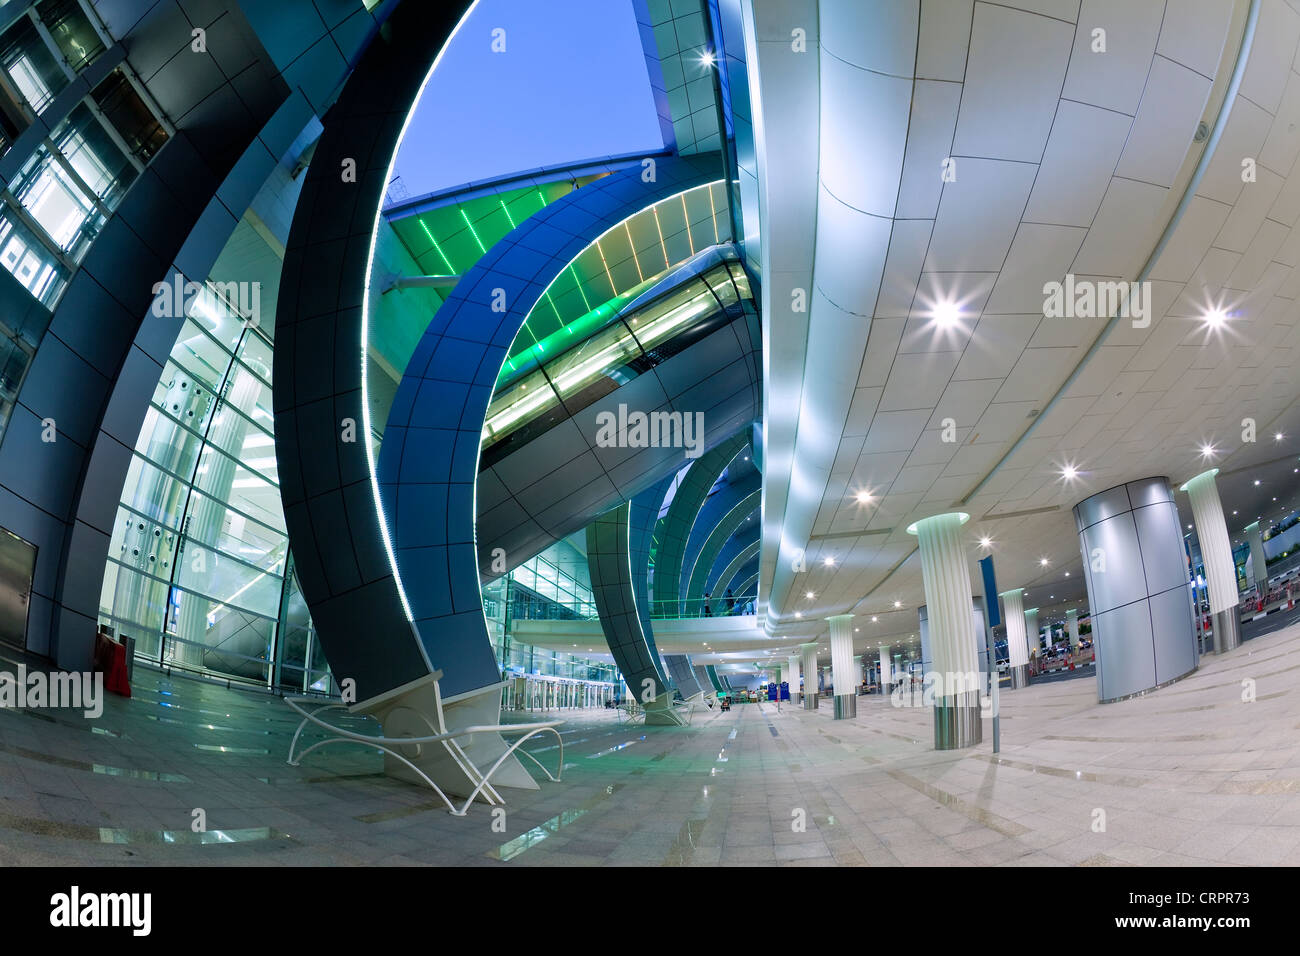 Arquitectura moderna y elegante del 2010 abrió la Terminal 3 del aeropuerto internacional de Dubai, Dubai, EAU, Emiratos Arabes Unidos Foto de stock